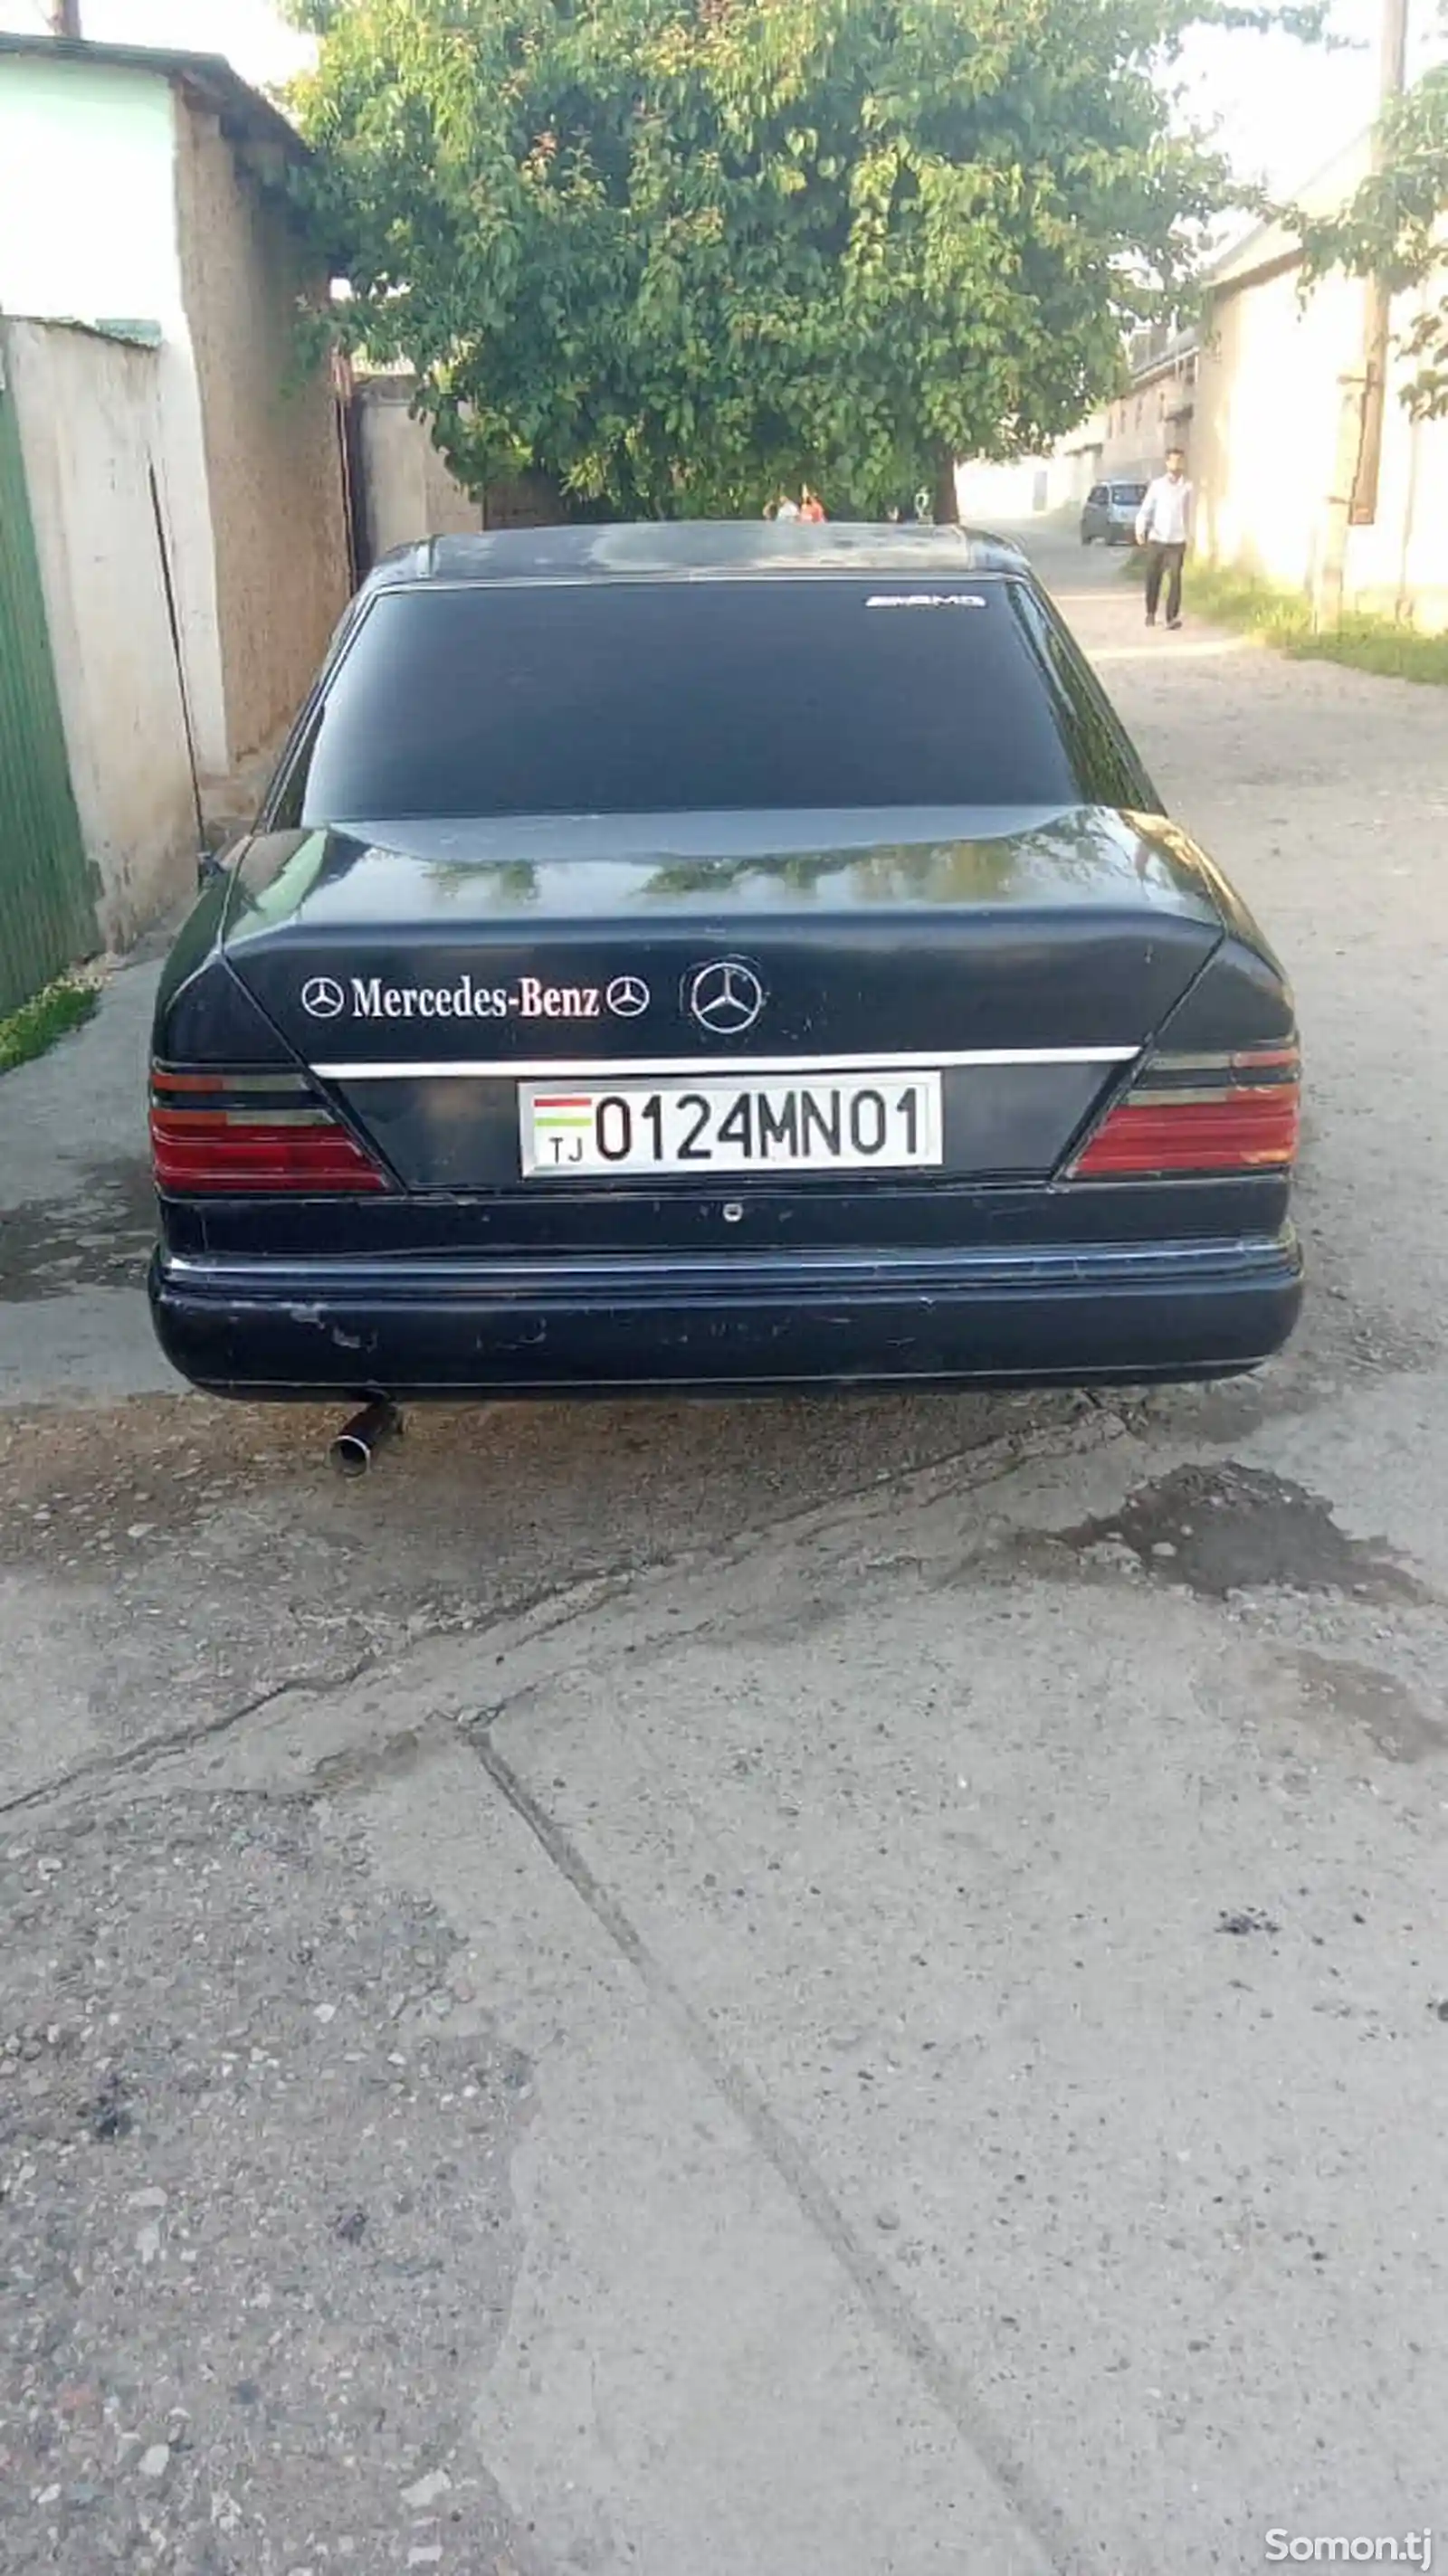 Mercedes-Benz C class, 1991-2